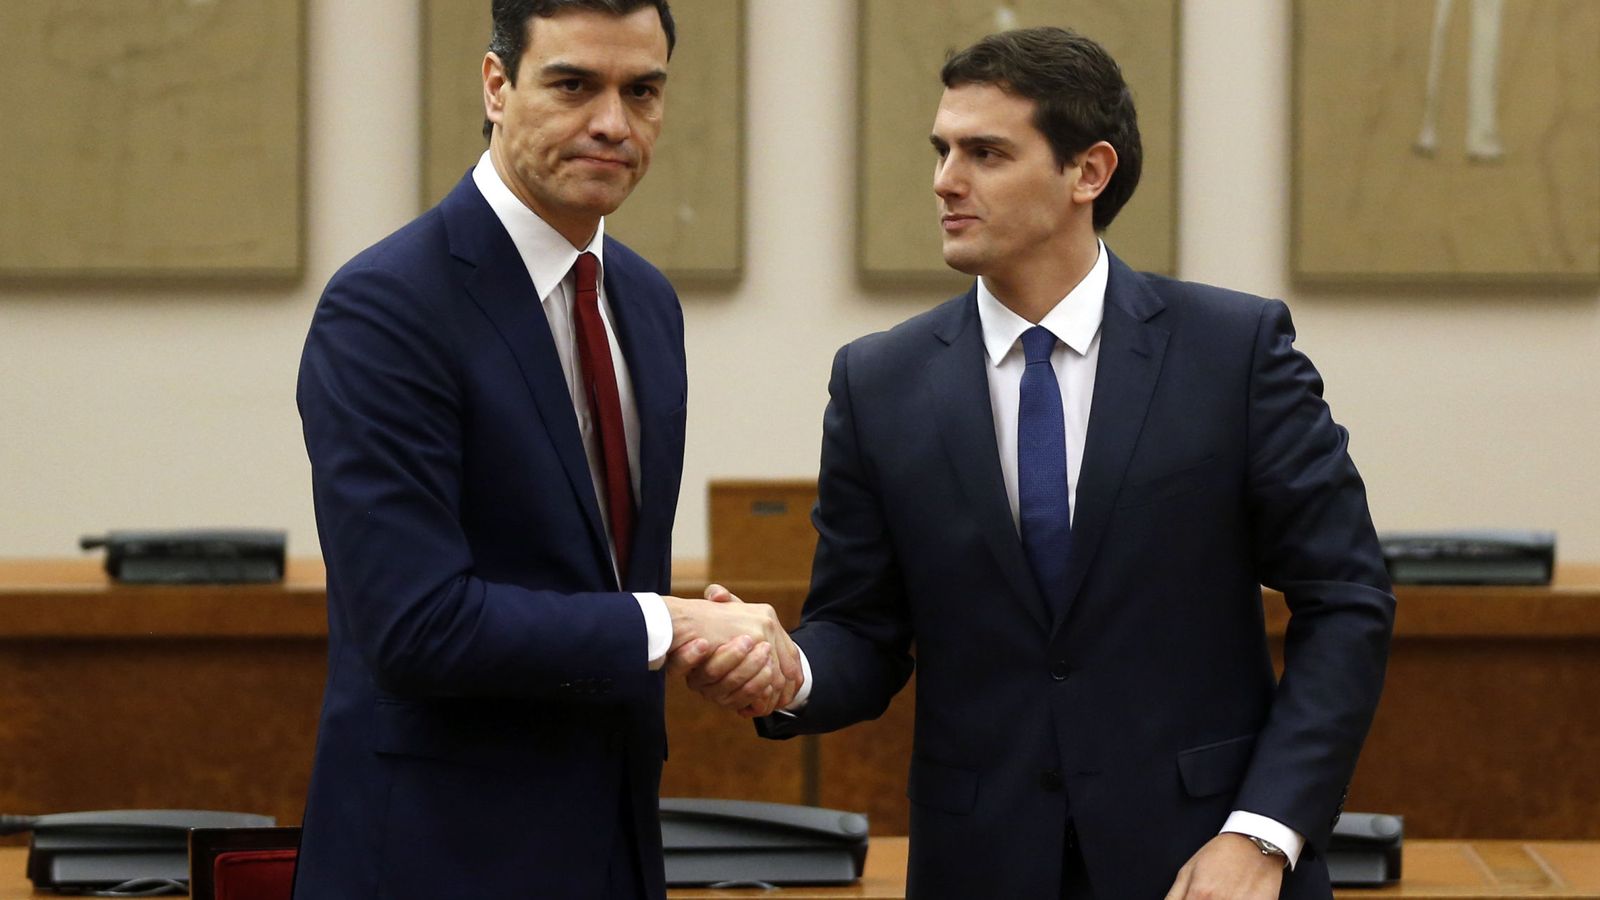 Foto: Choque de manos entre Pedro Sánchez y Albert Rivera tras el acuerdo de la anterior legislatura logrado en febrero pasado. (Reuters)